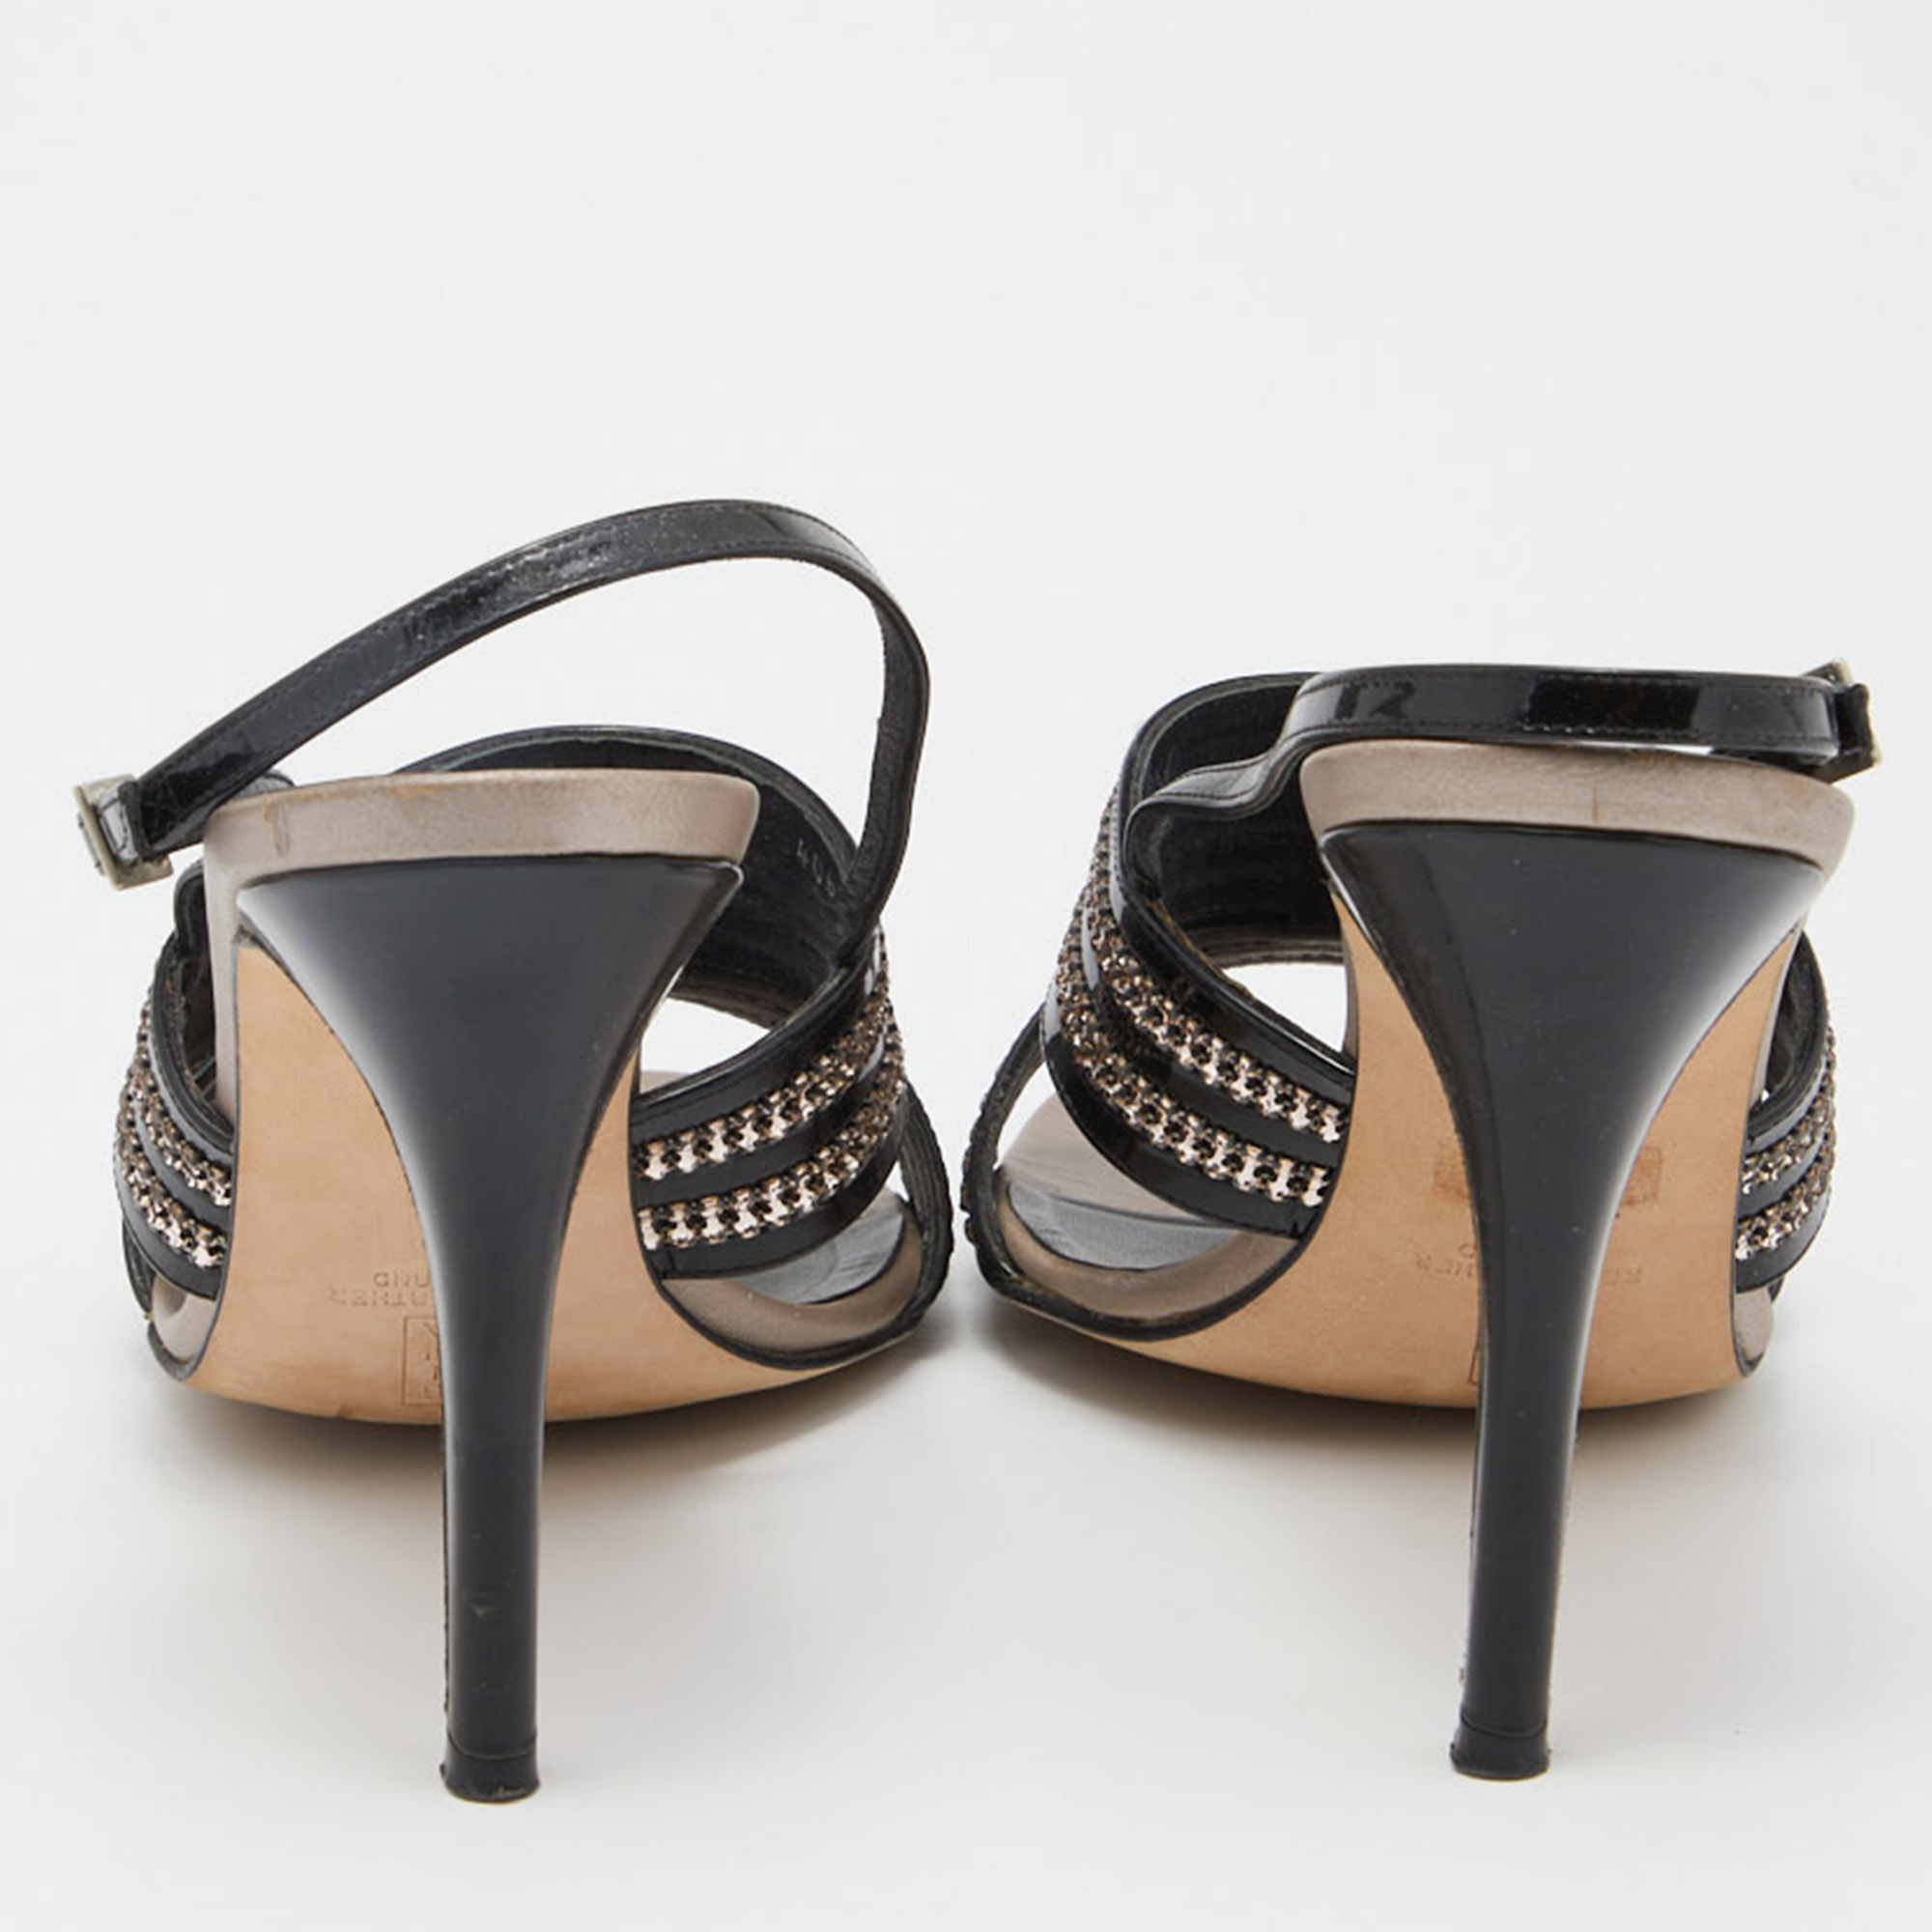 Gina Black Patent Leather Crystal Embellished Slingback Sandals Size 41